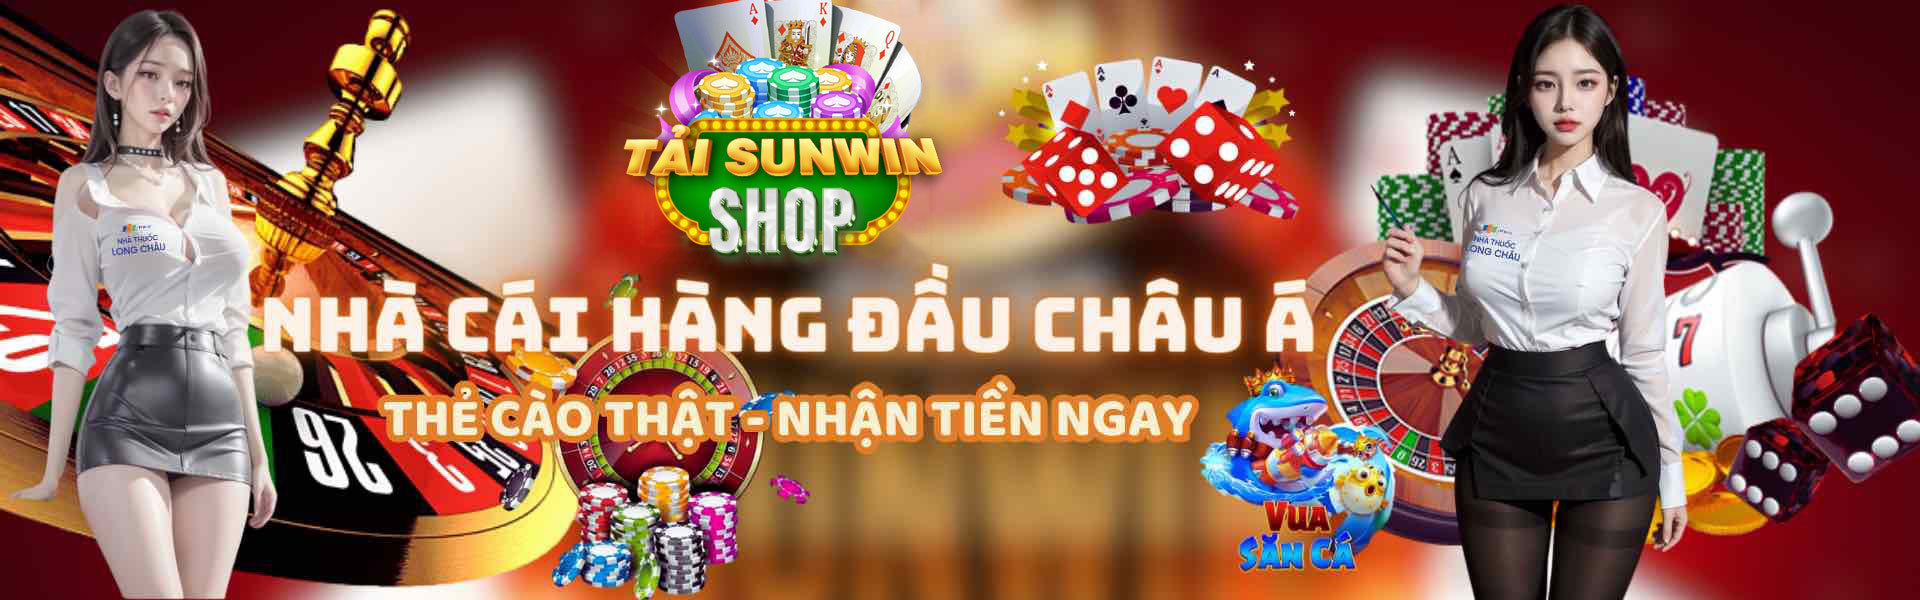 Banner sunwin shop